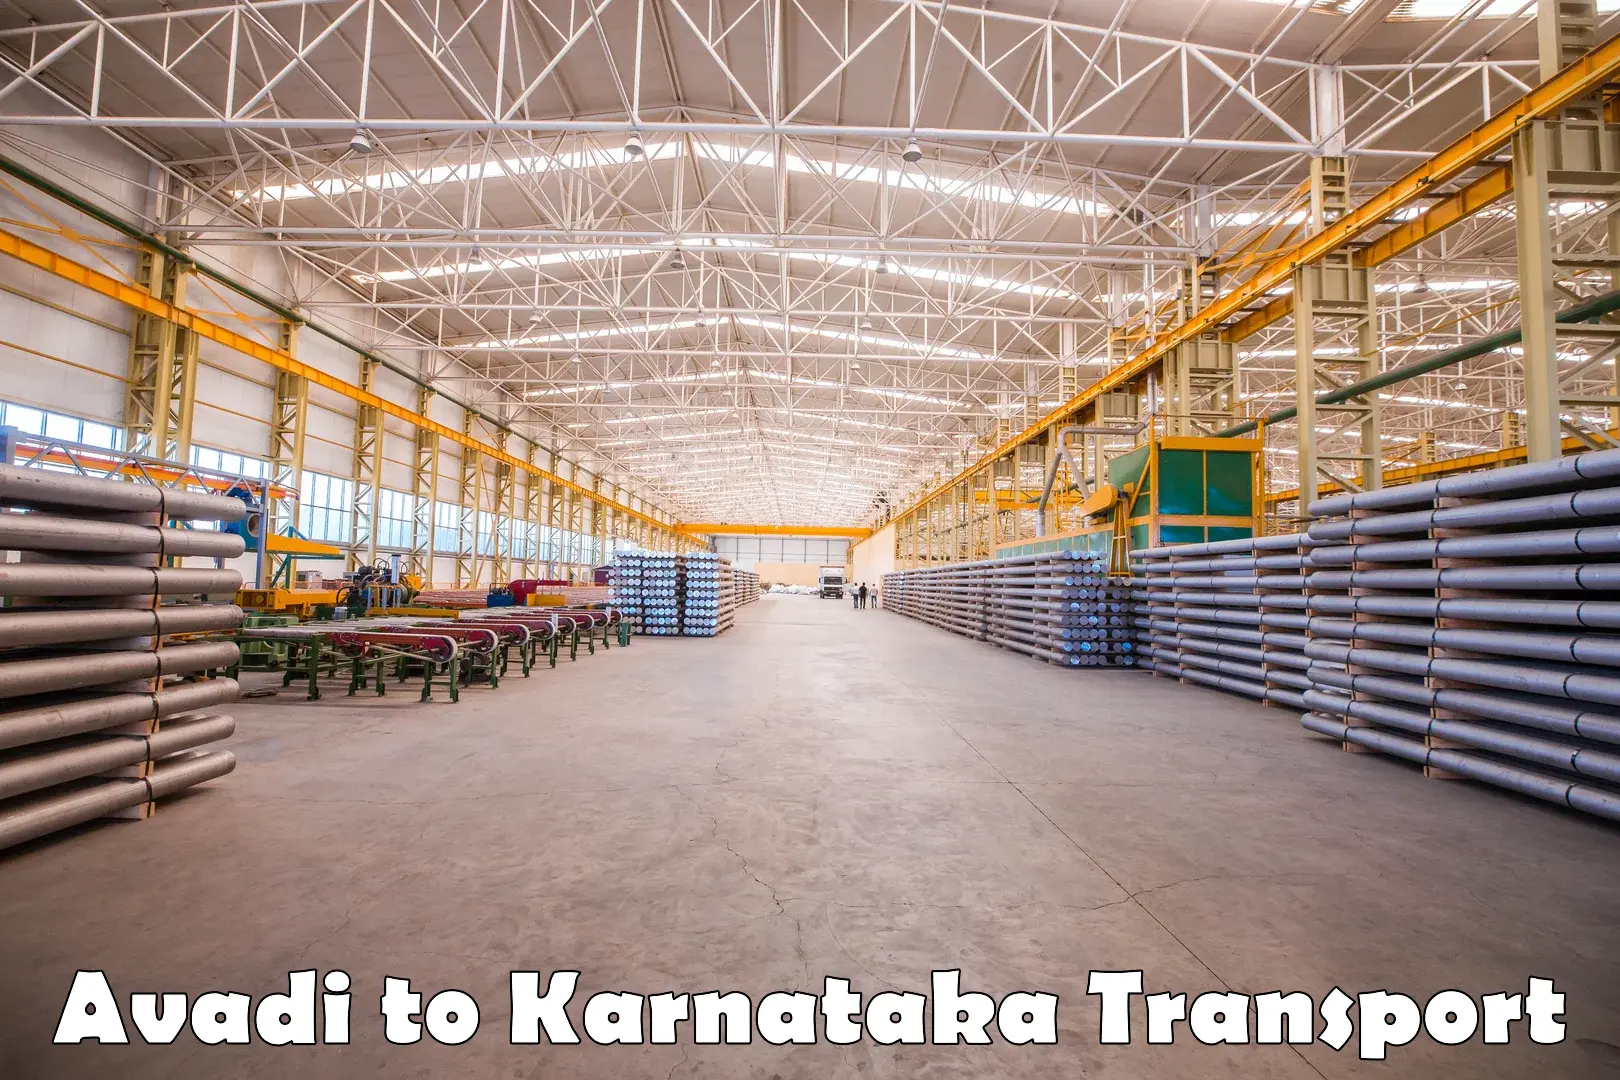 Express transport services Avadi to Karnataka